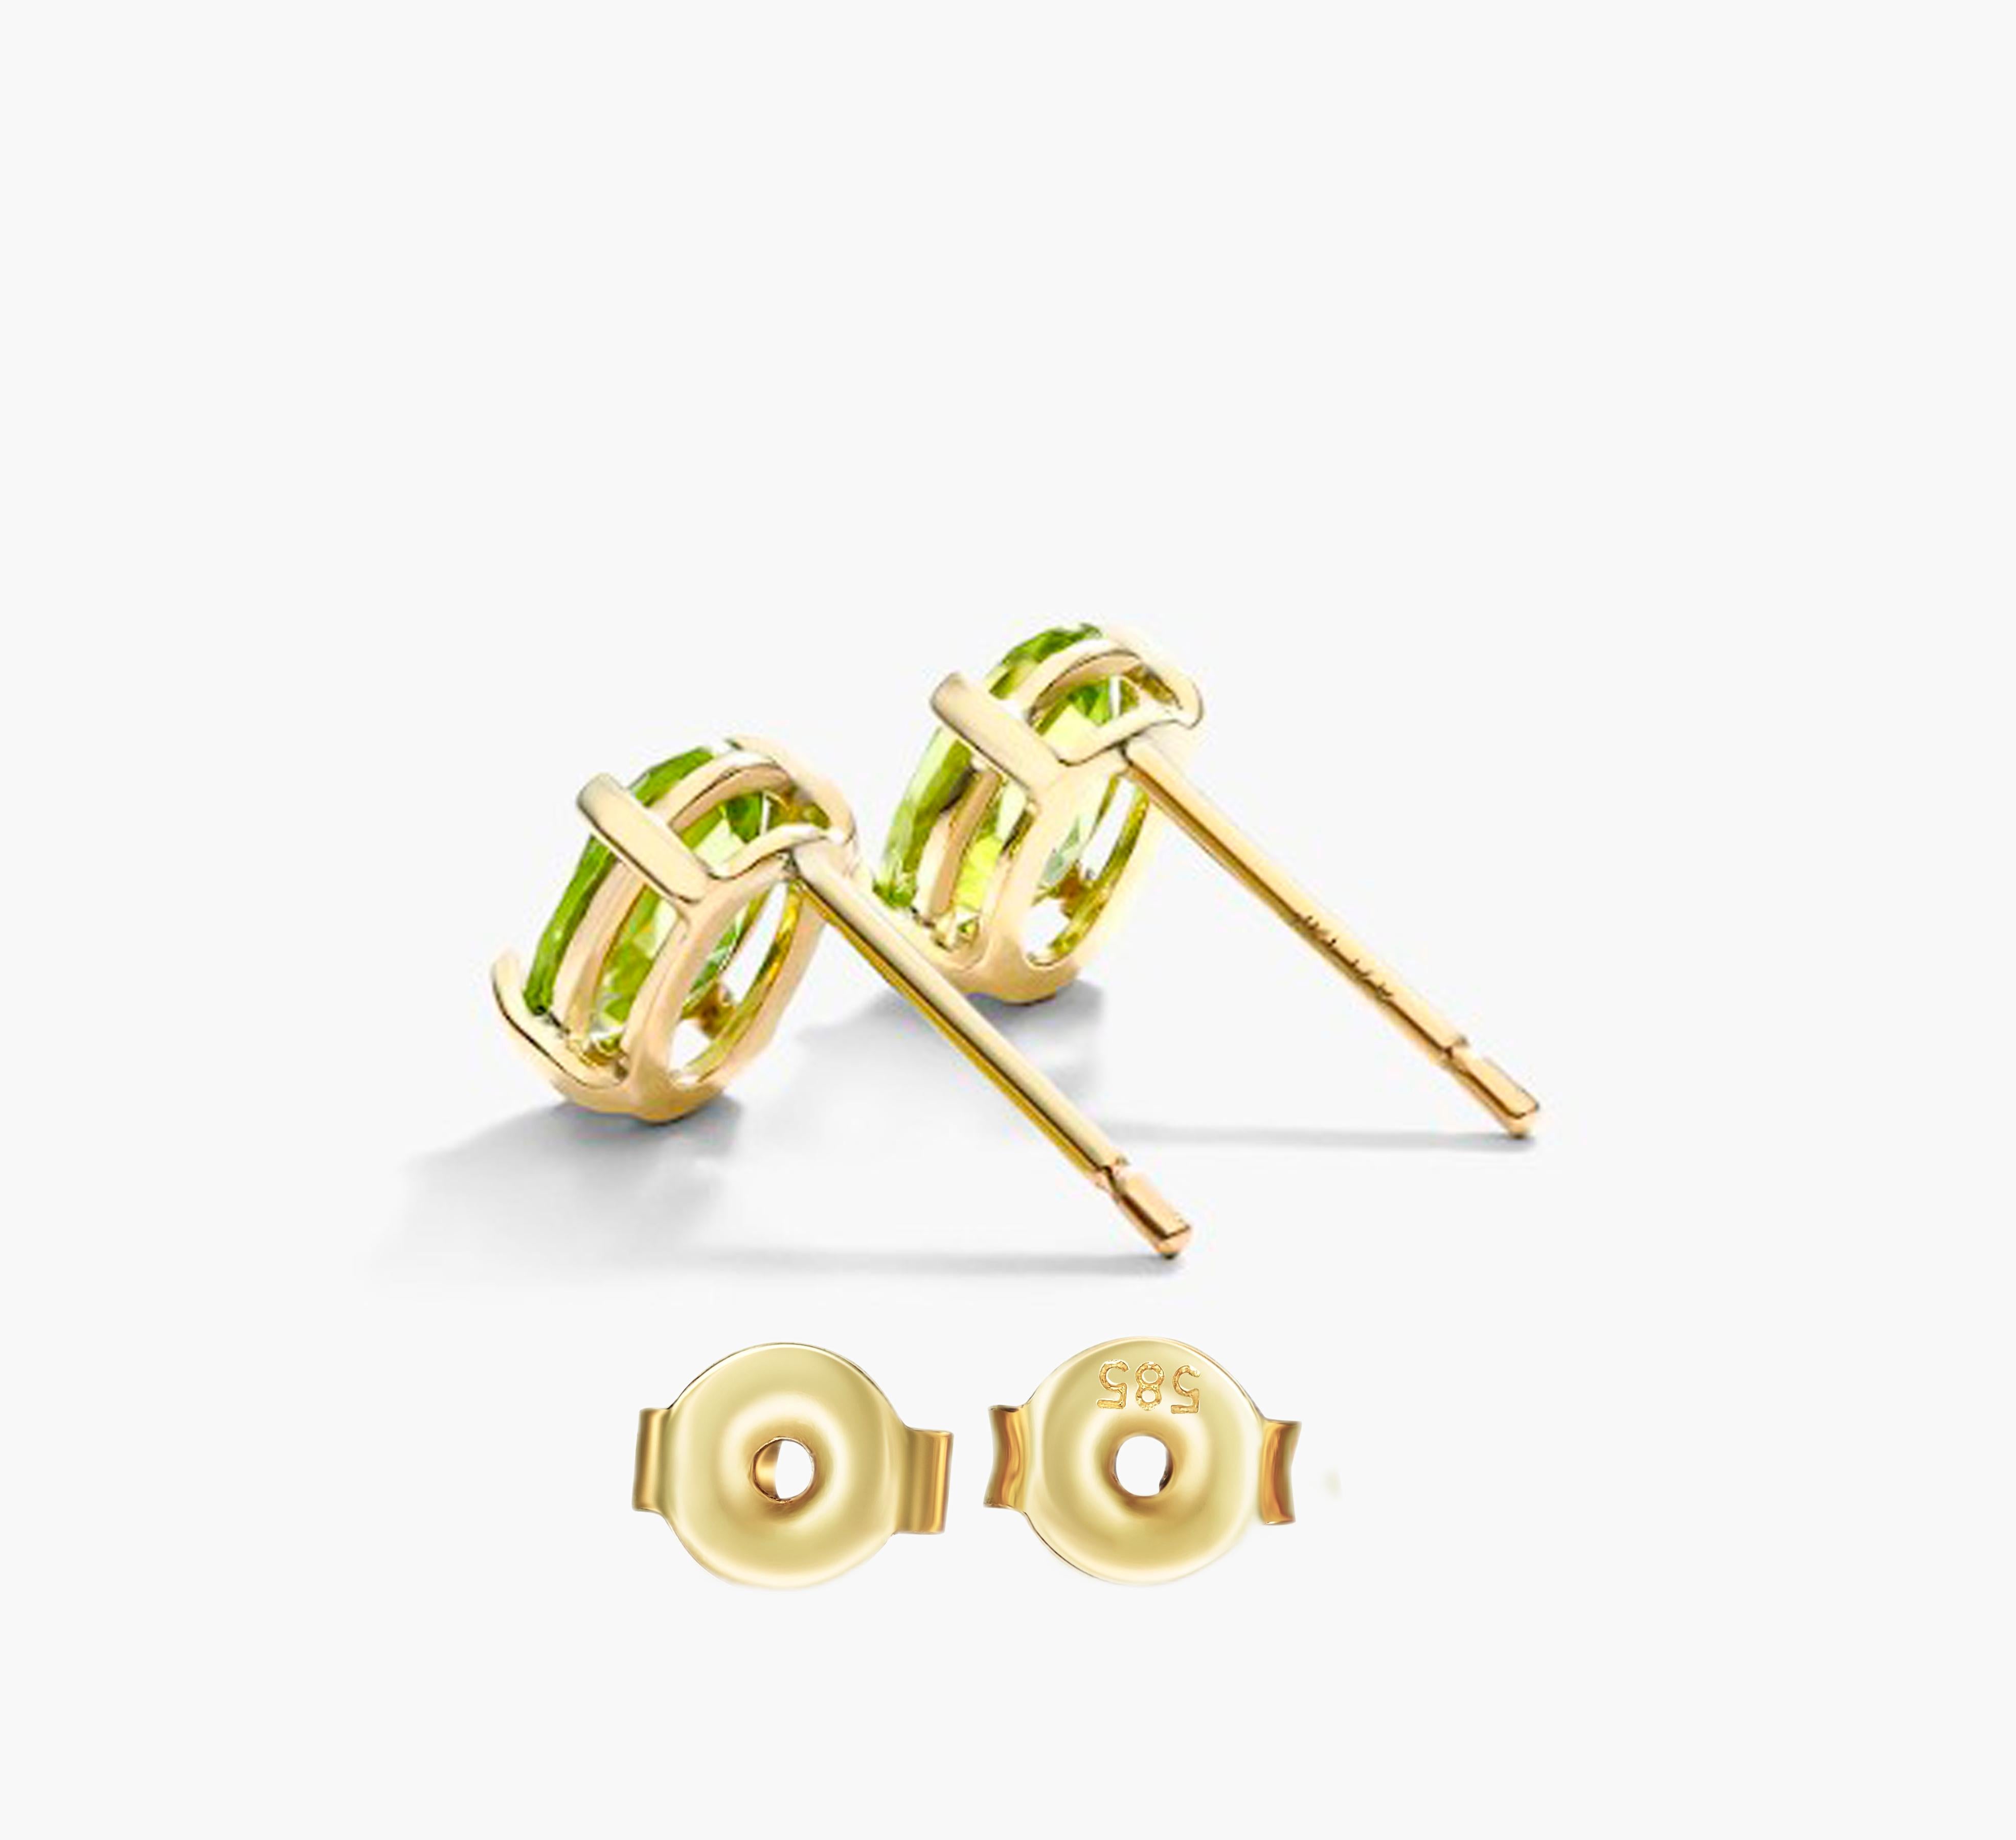 Oval Cut August birthstone peridot 14k gold earrings studs For Sale